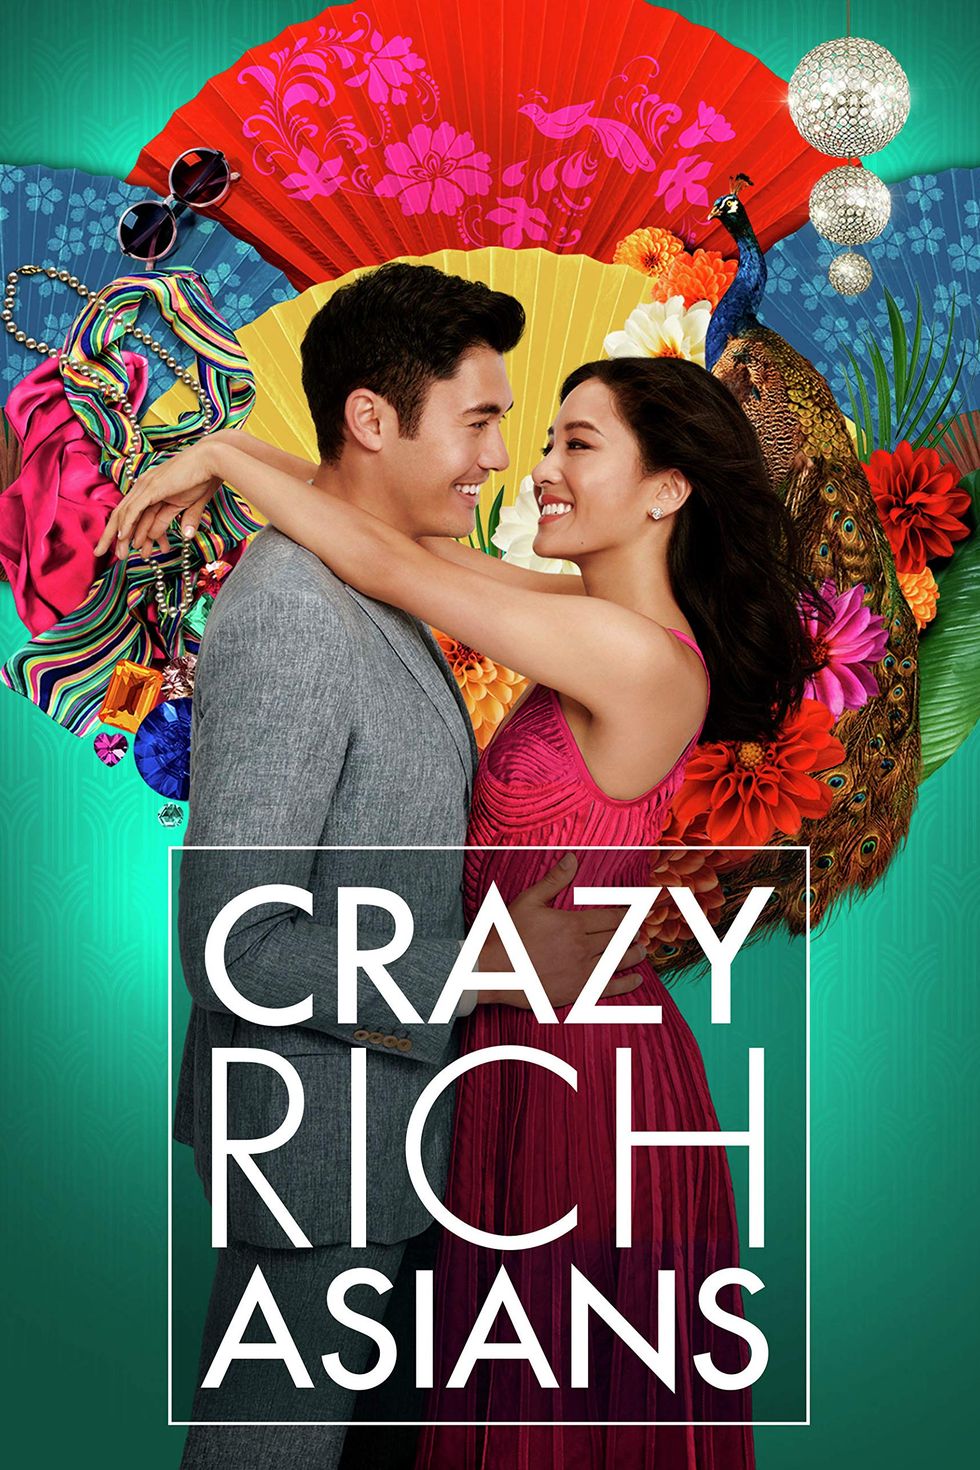 "Crazy Rich Asians"